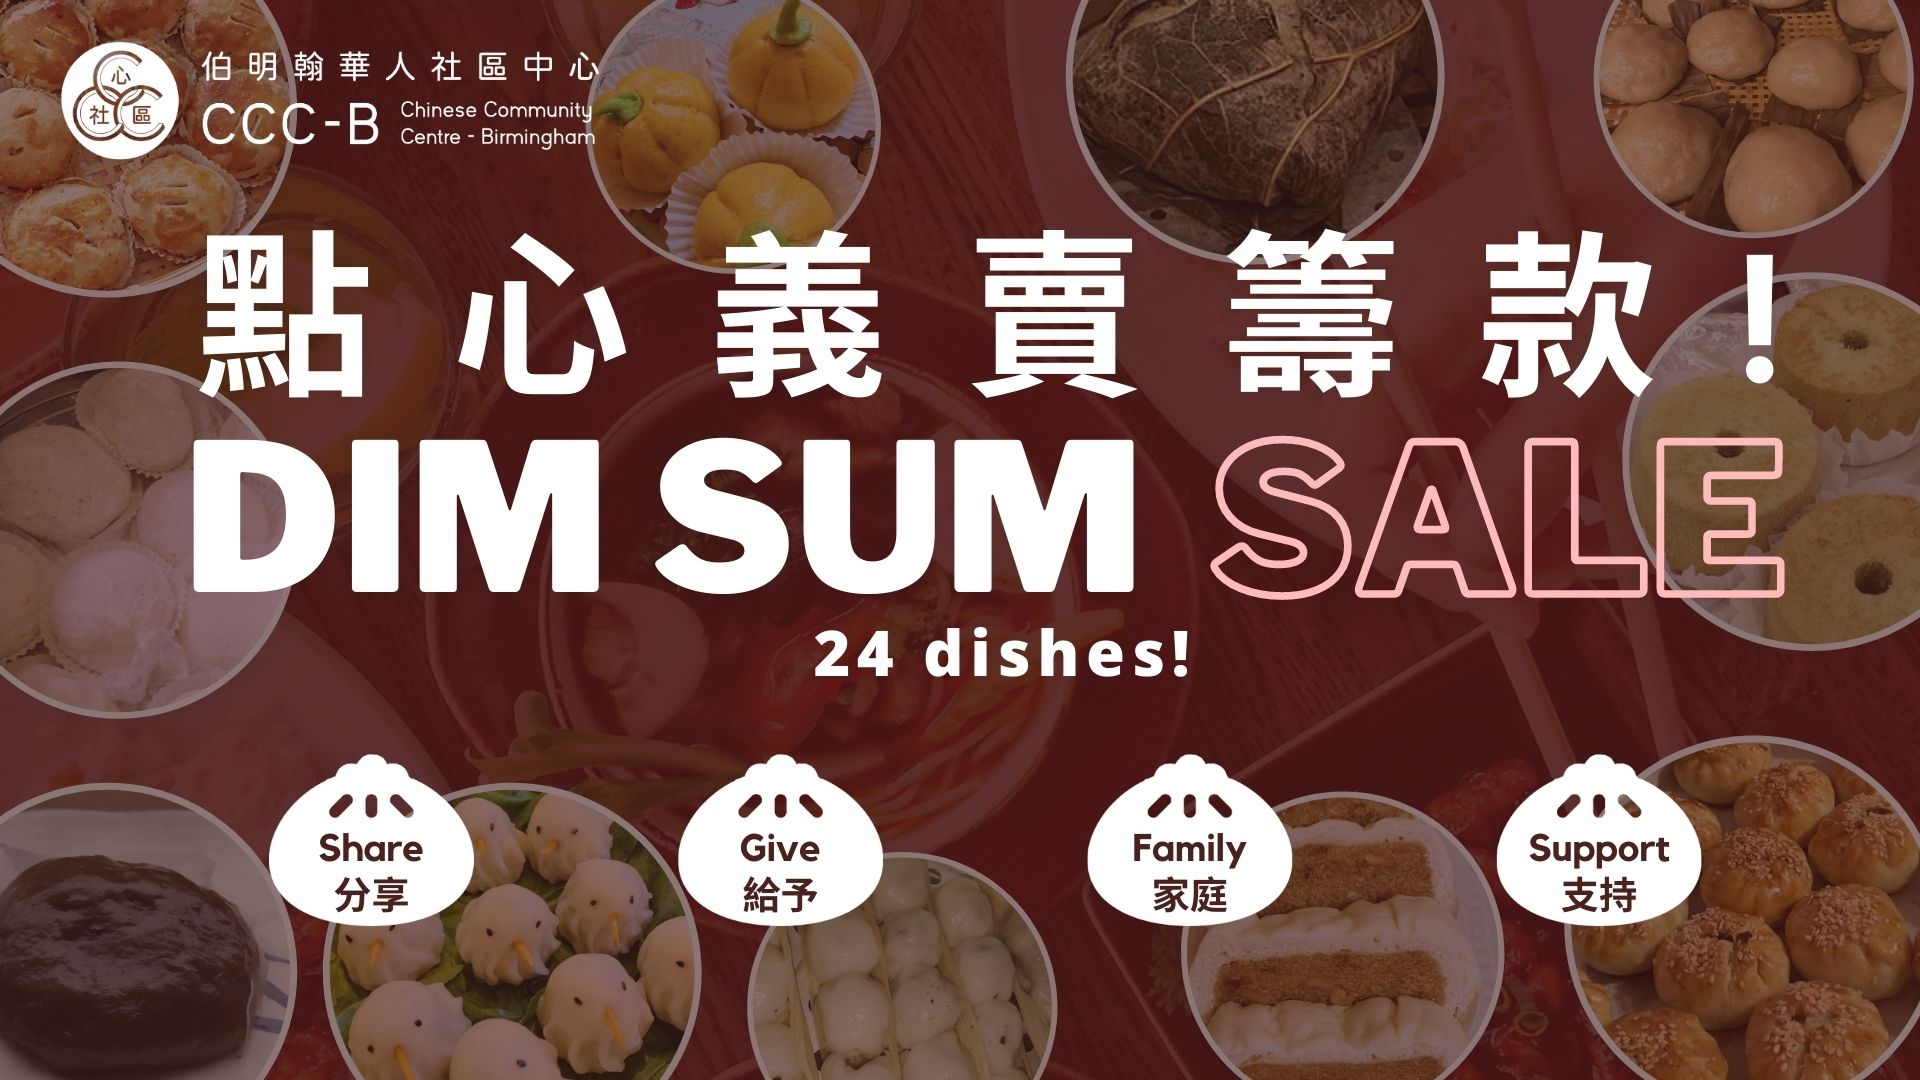 Dim Sum Sale Fundraising Event 2020 点心售卖筹款活动